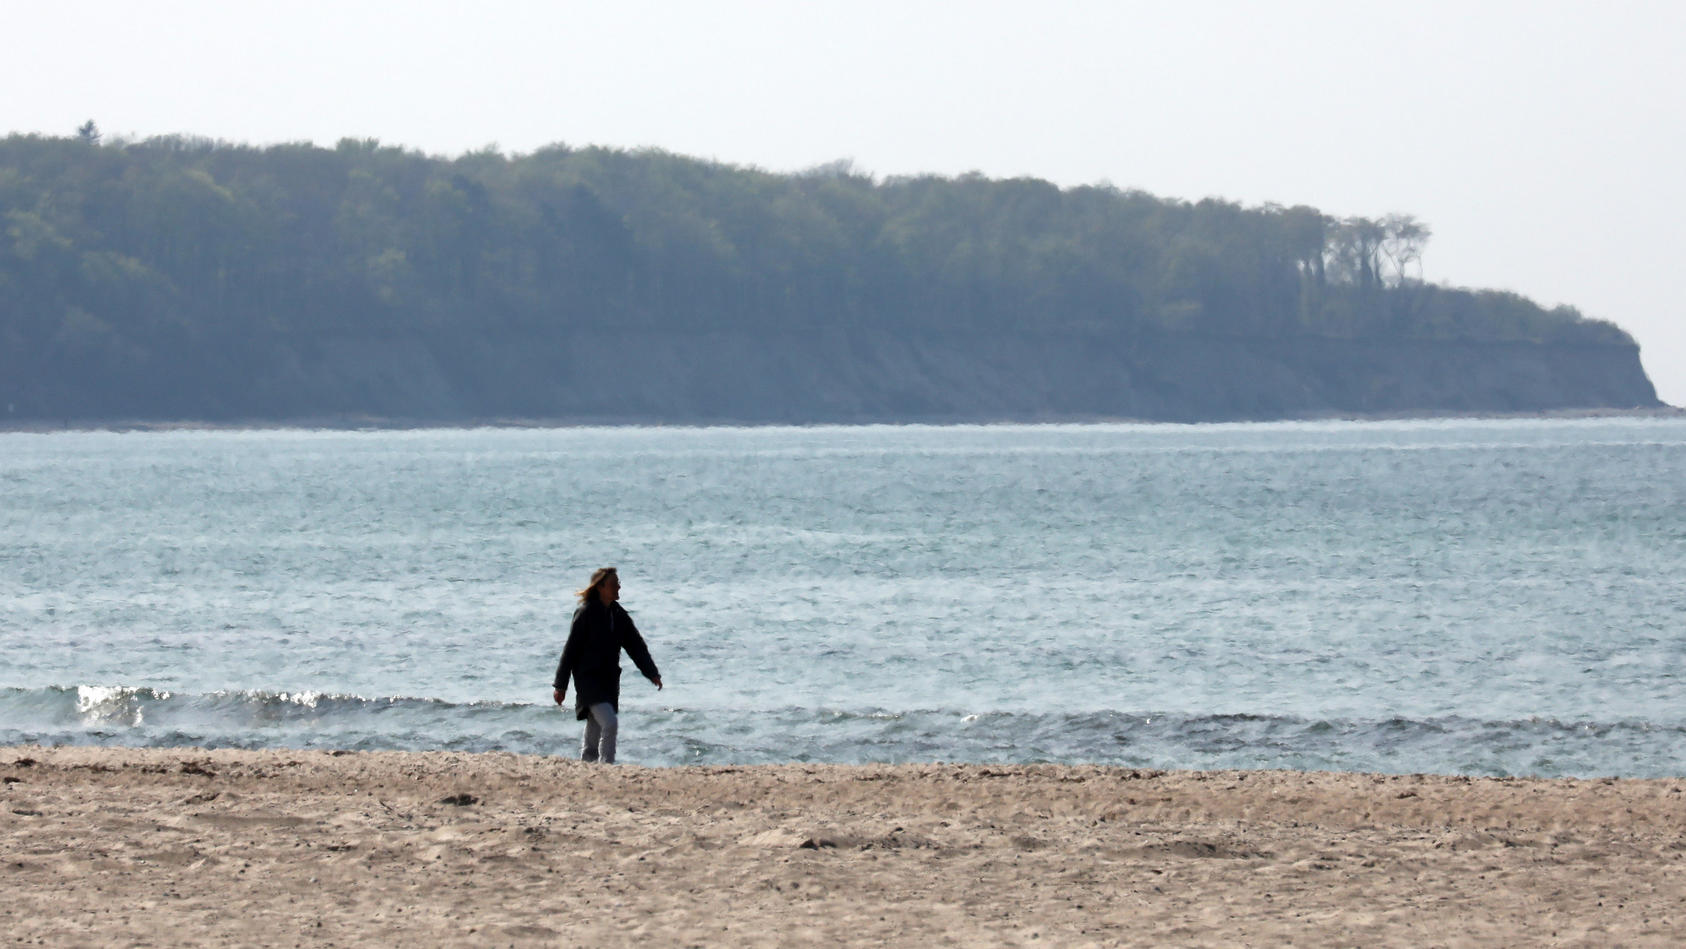 27.04.2020, Mecklenburg-Vorpommern, Warnemünde: Ein Frau geht am menschenleeren Strand spazieren, wo vor einigen Tagen noch Strandkörbe gestanden sind. Unklare Vorgaben sorgen bei den Strandkorbvermietern für Verwirrung: Während der eine seine Möbel 